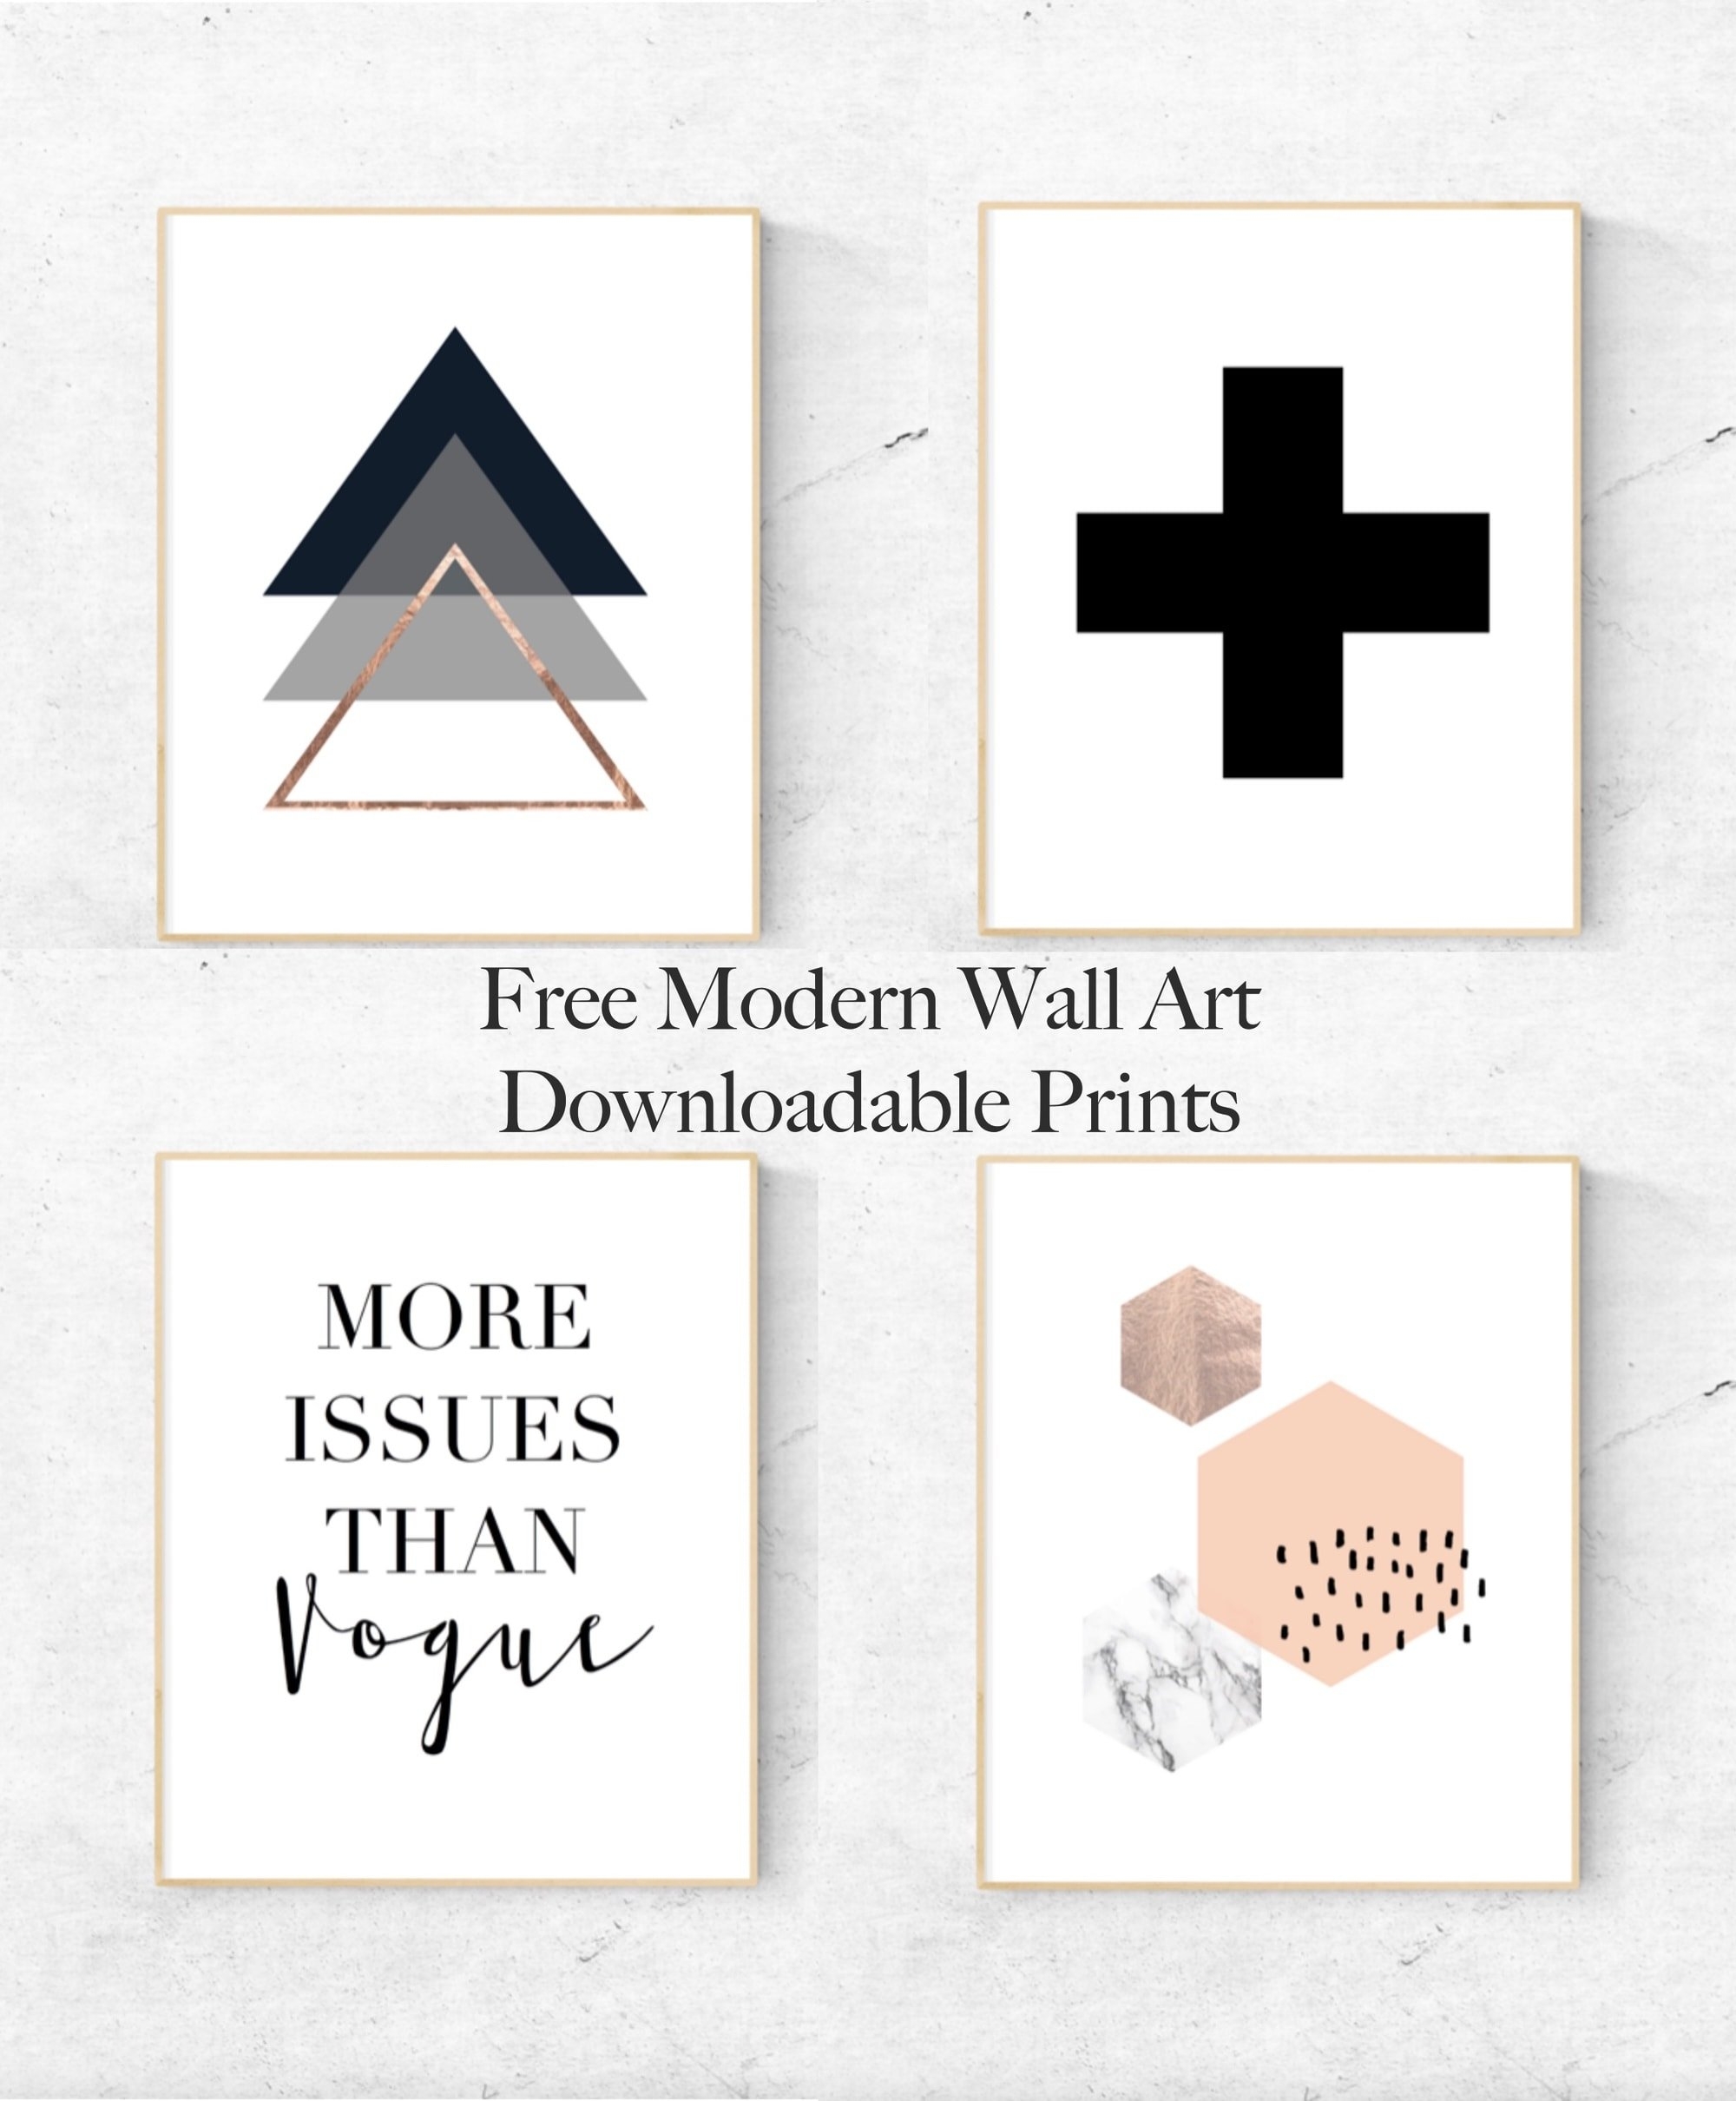 Free Modern Wall Art Downloadable Prints - Free Printable Art